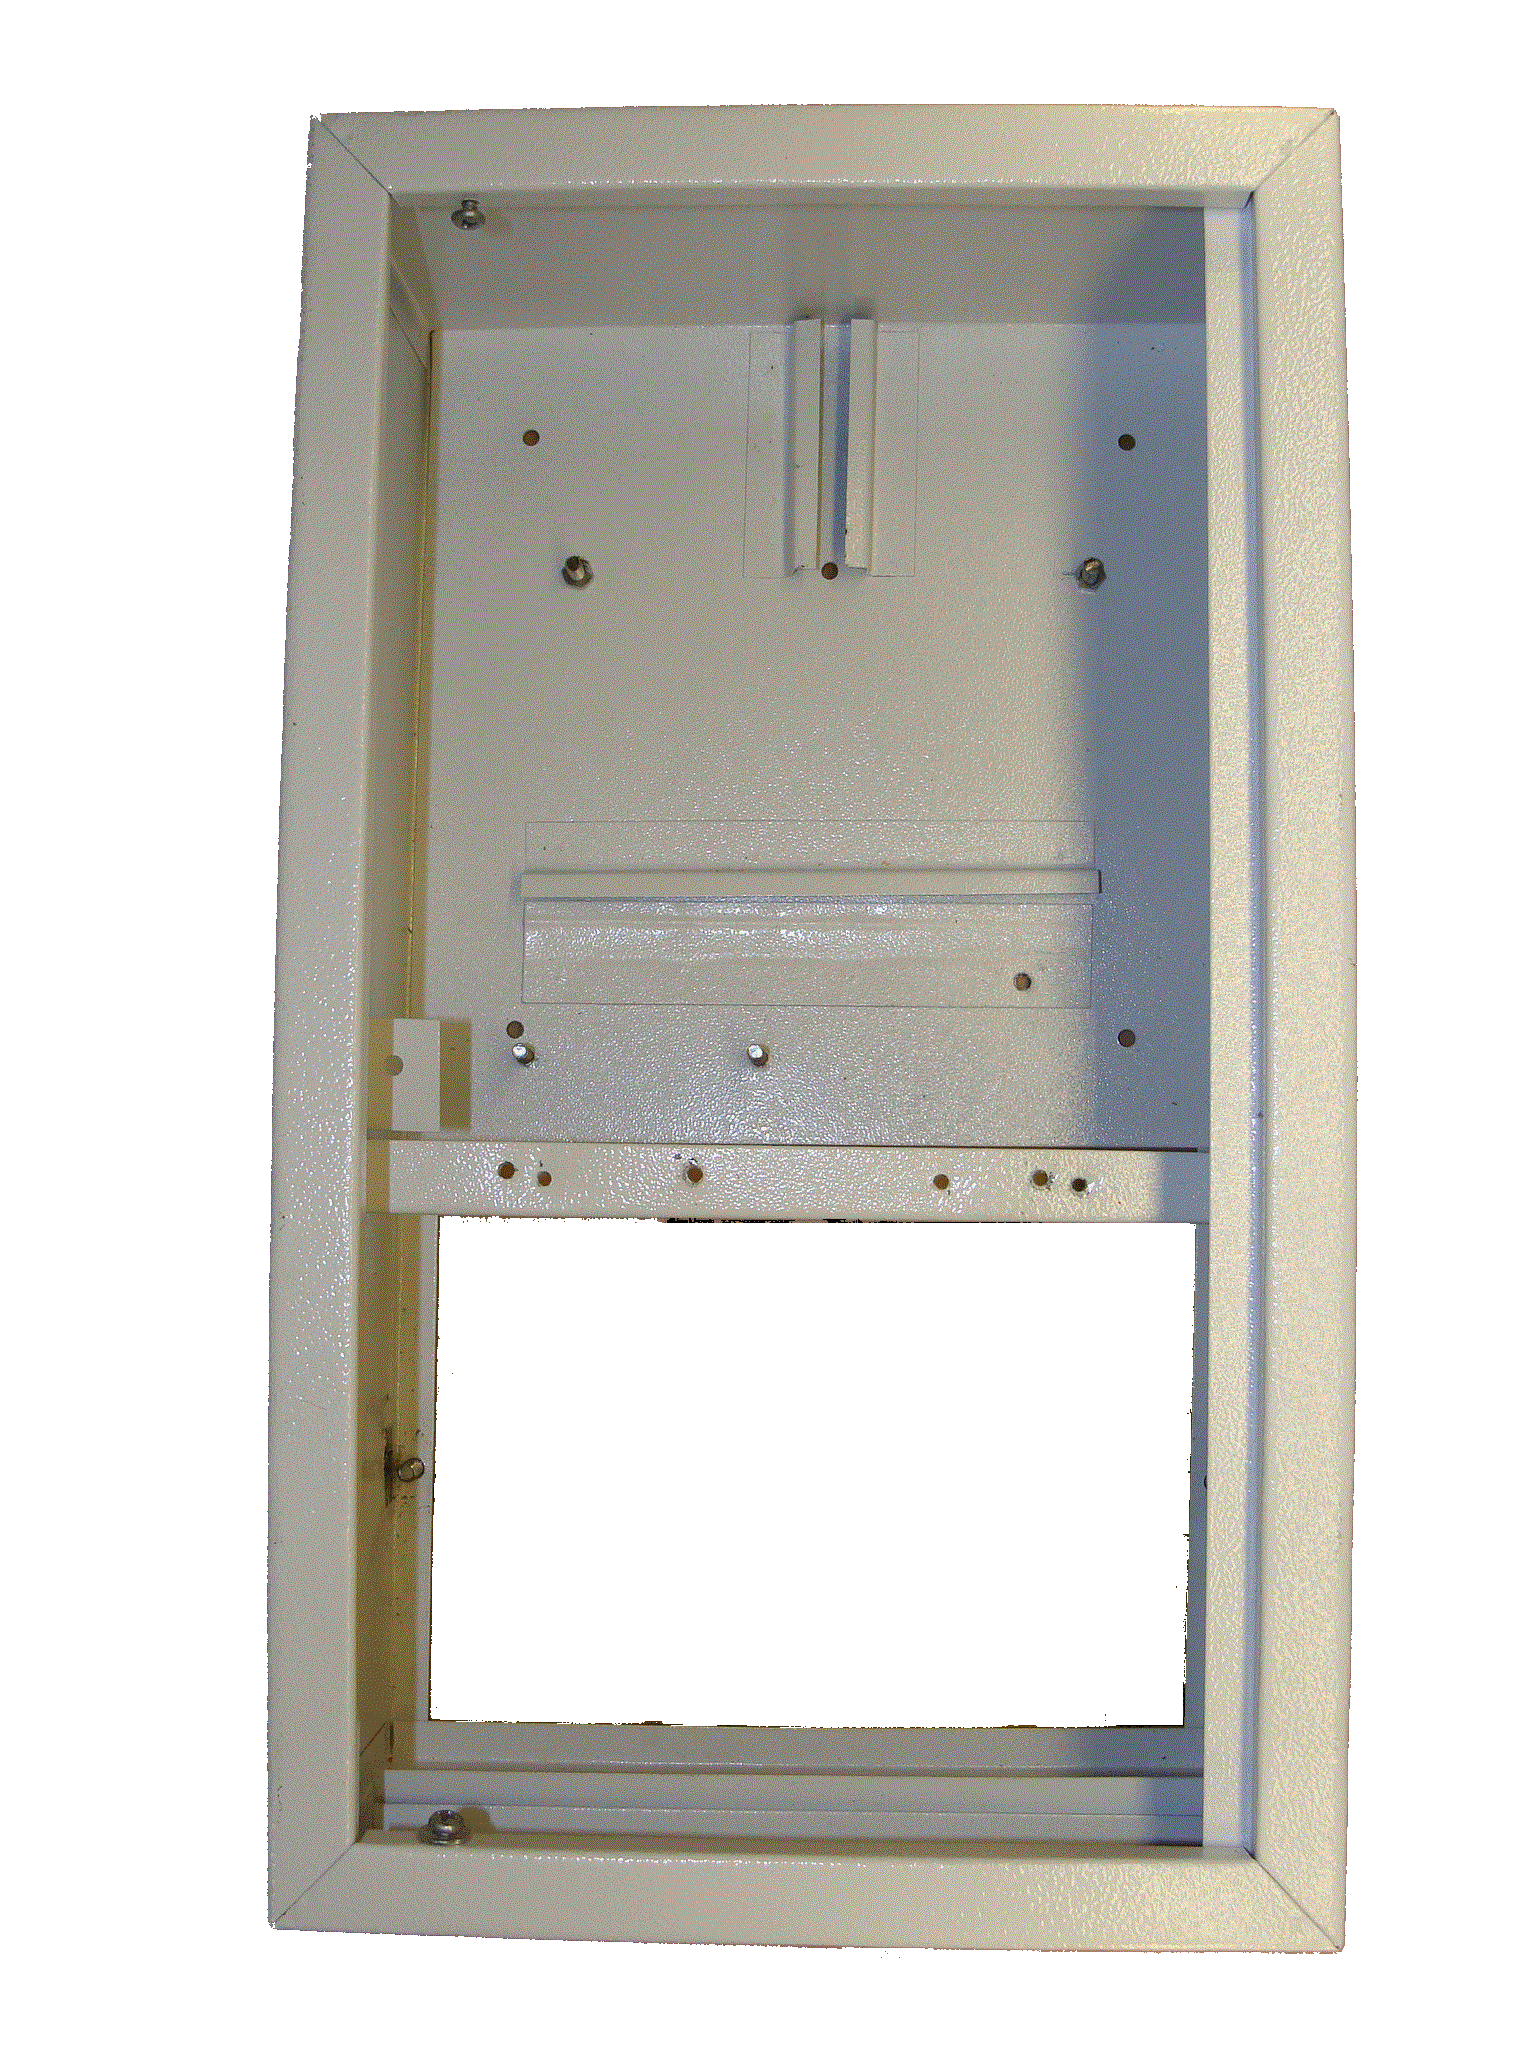 AVR LCD